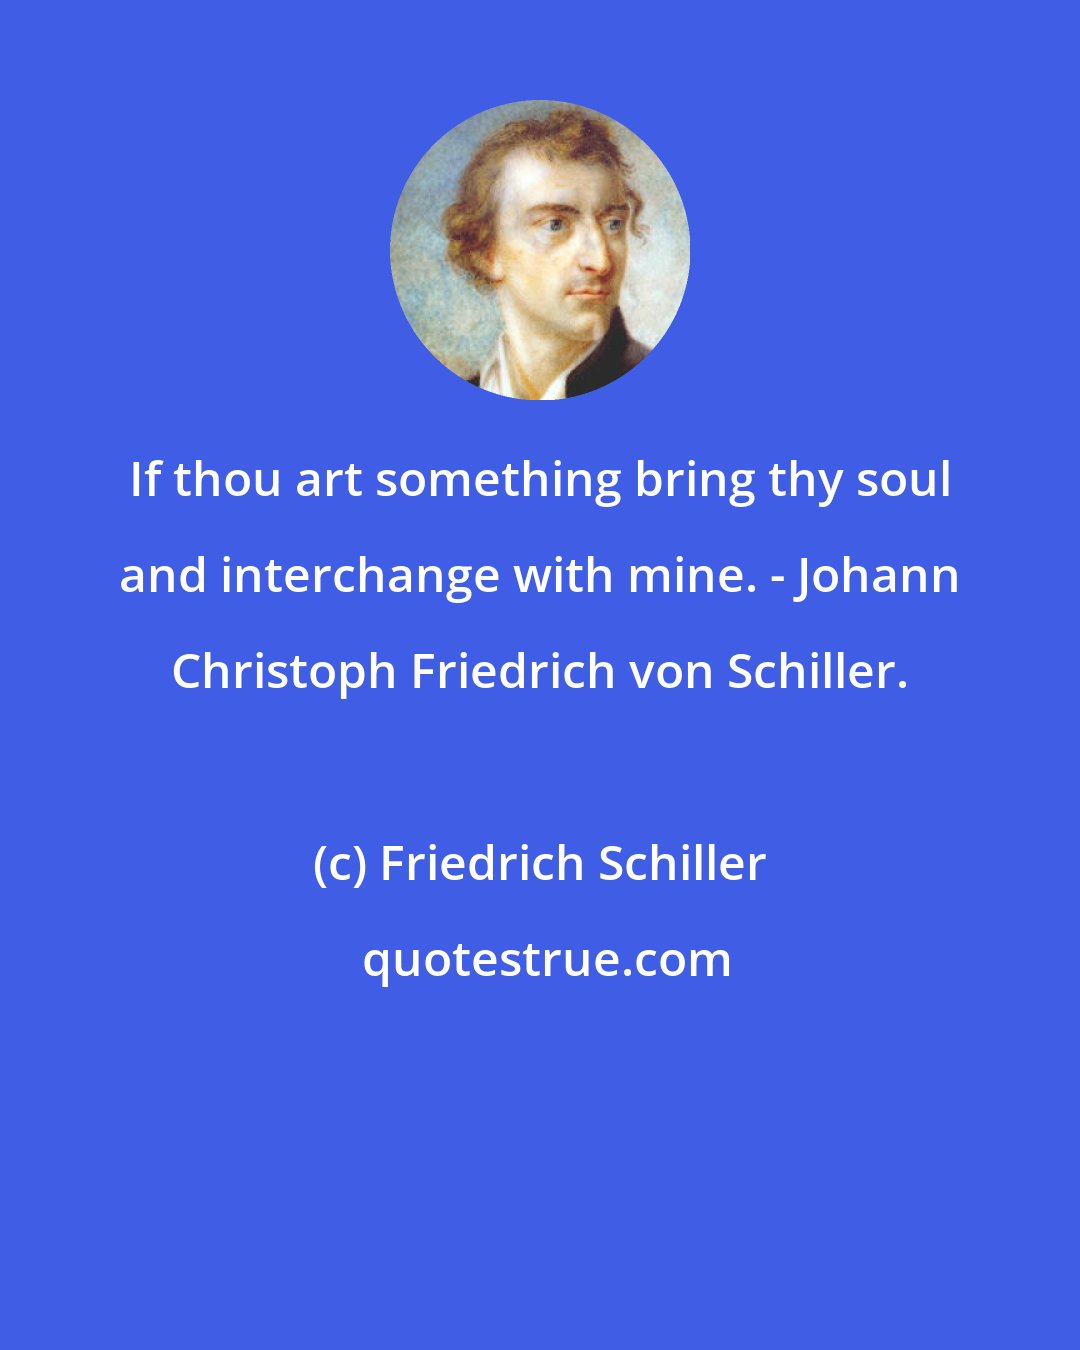 Friedrich Schiller: If thou art something bring thy soul and interchange with mine. - Johann Christoph Friedrich von Schiller.